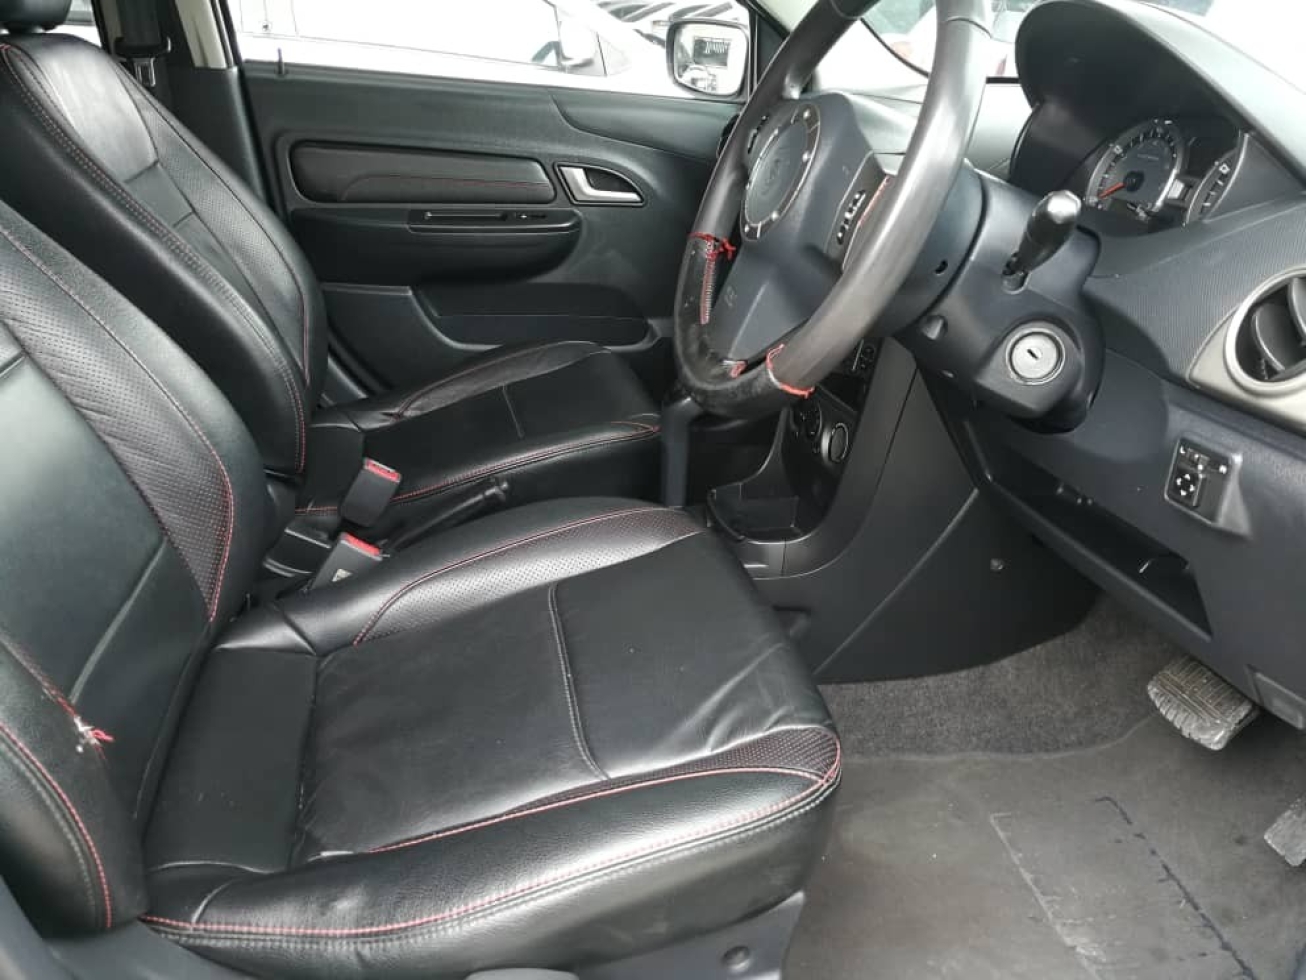 2015 Proton SAGA 1.3 FLX (A)SE leather seat